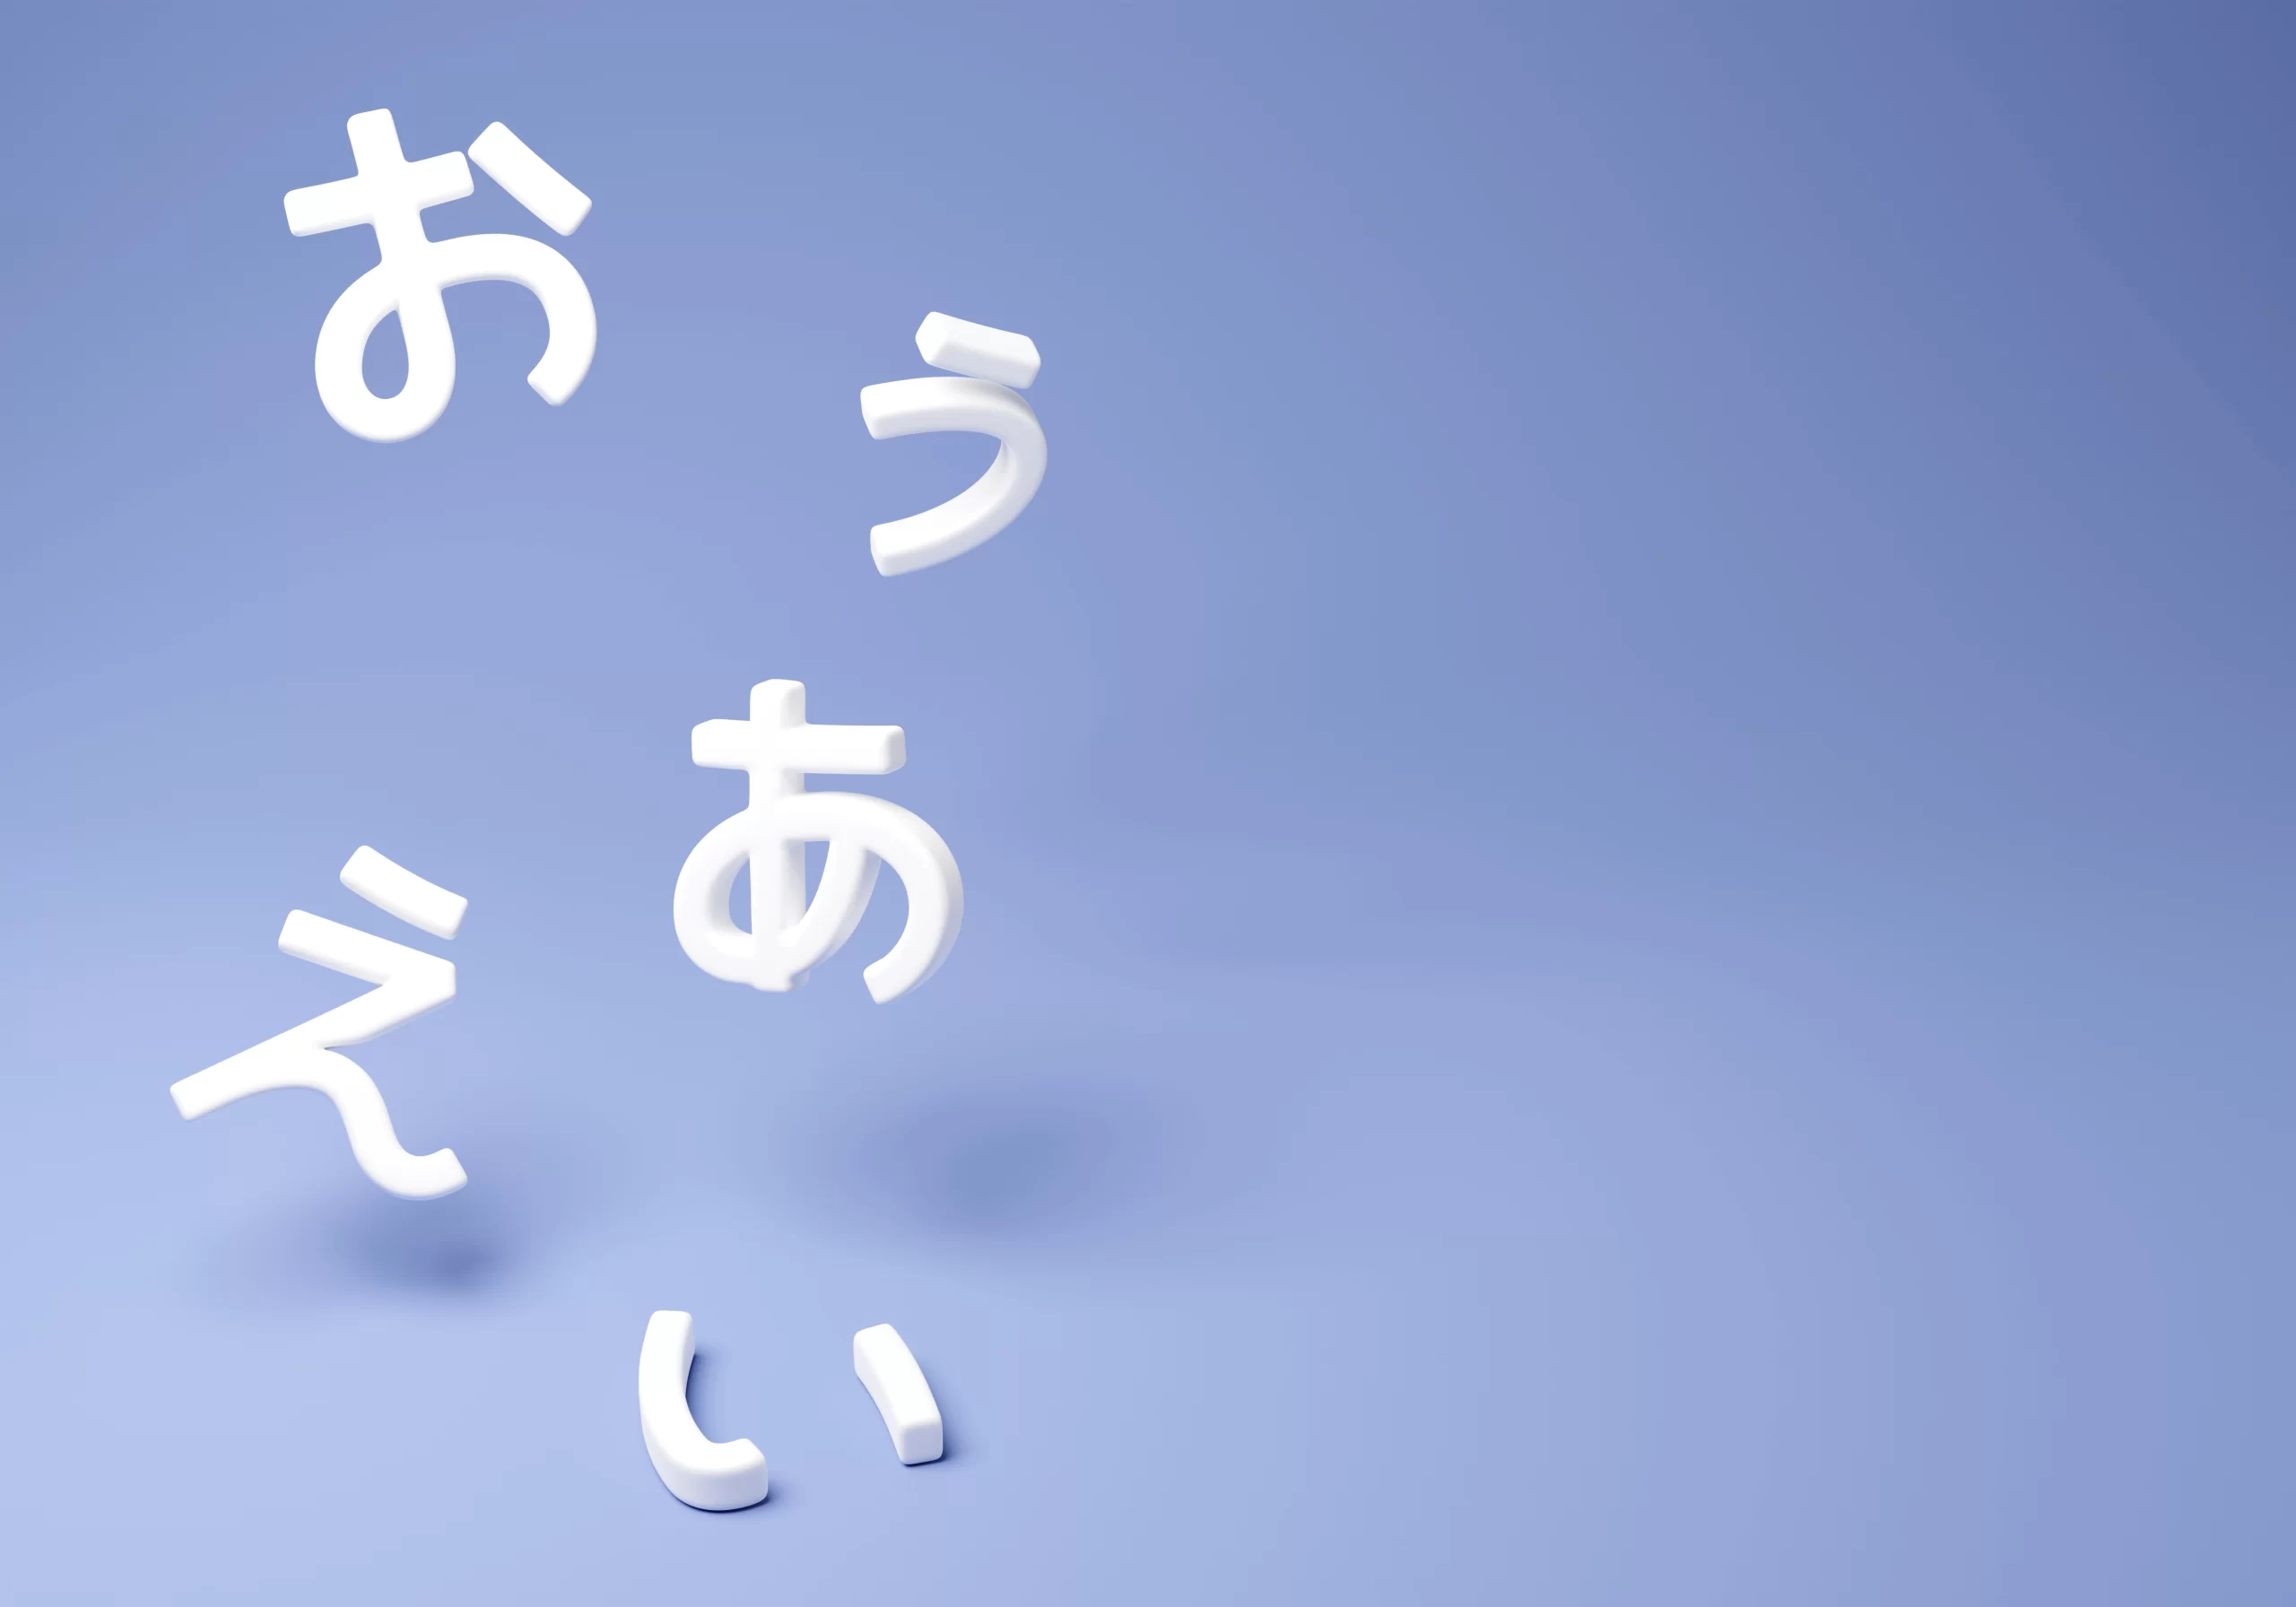 Learn Japanese  Learn japanese words, Japanese language, Basic